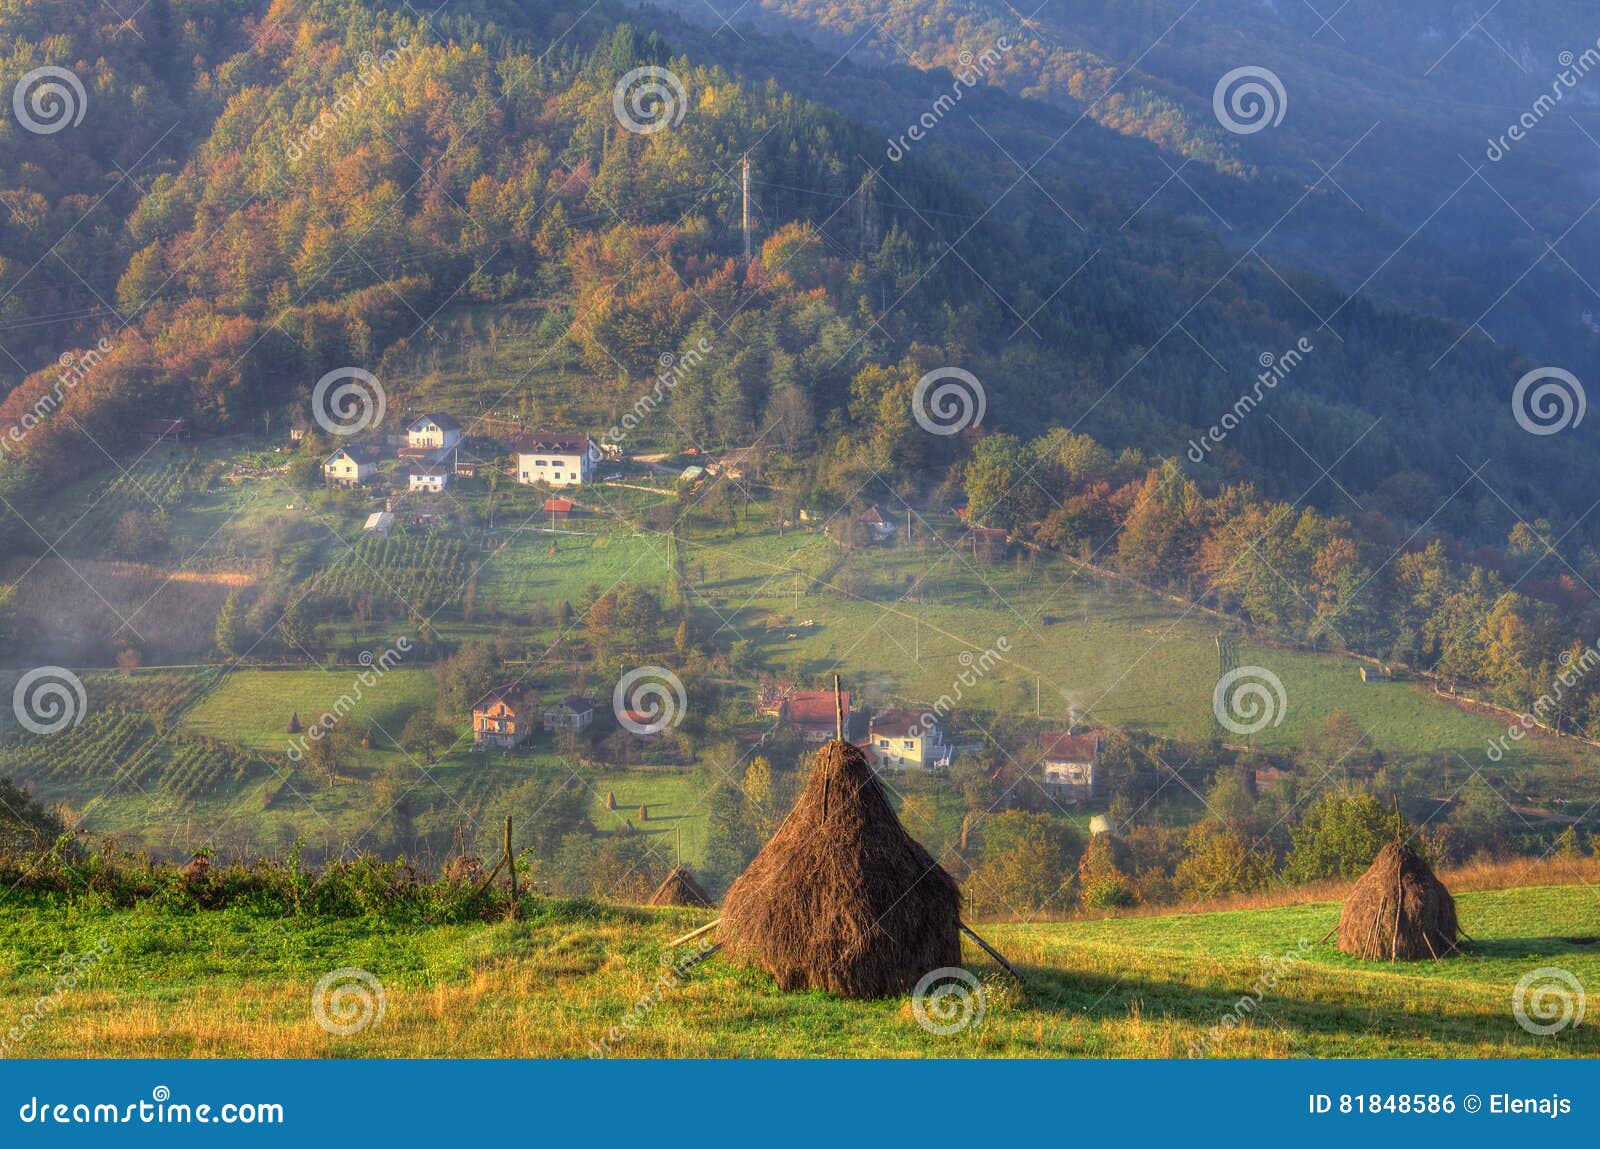 autumn near bajina basta, western serbia